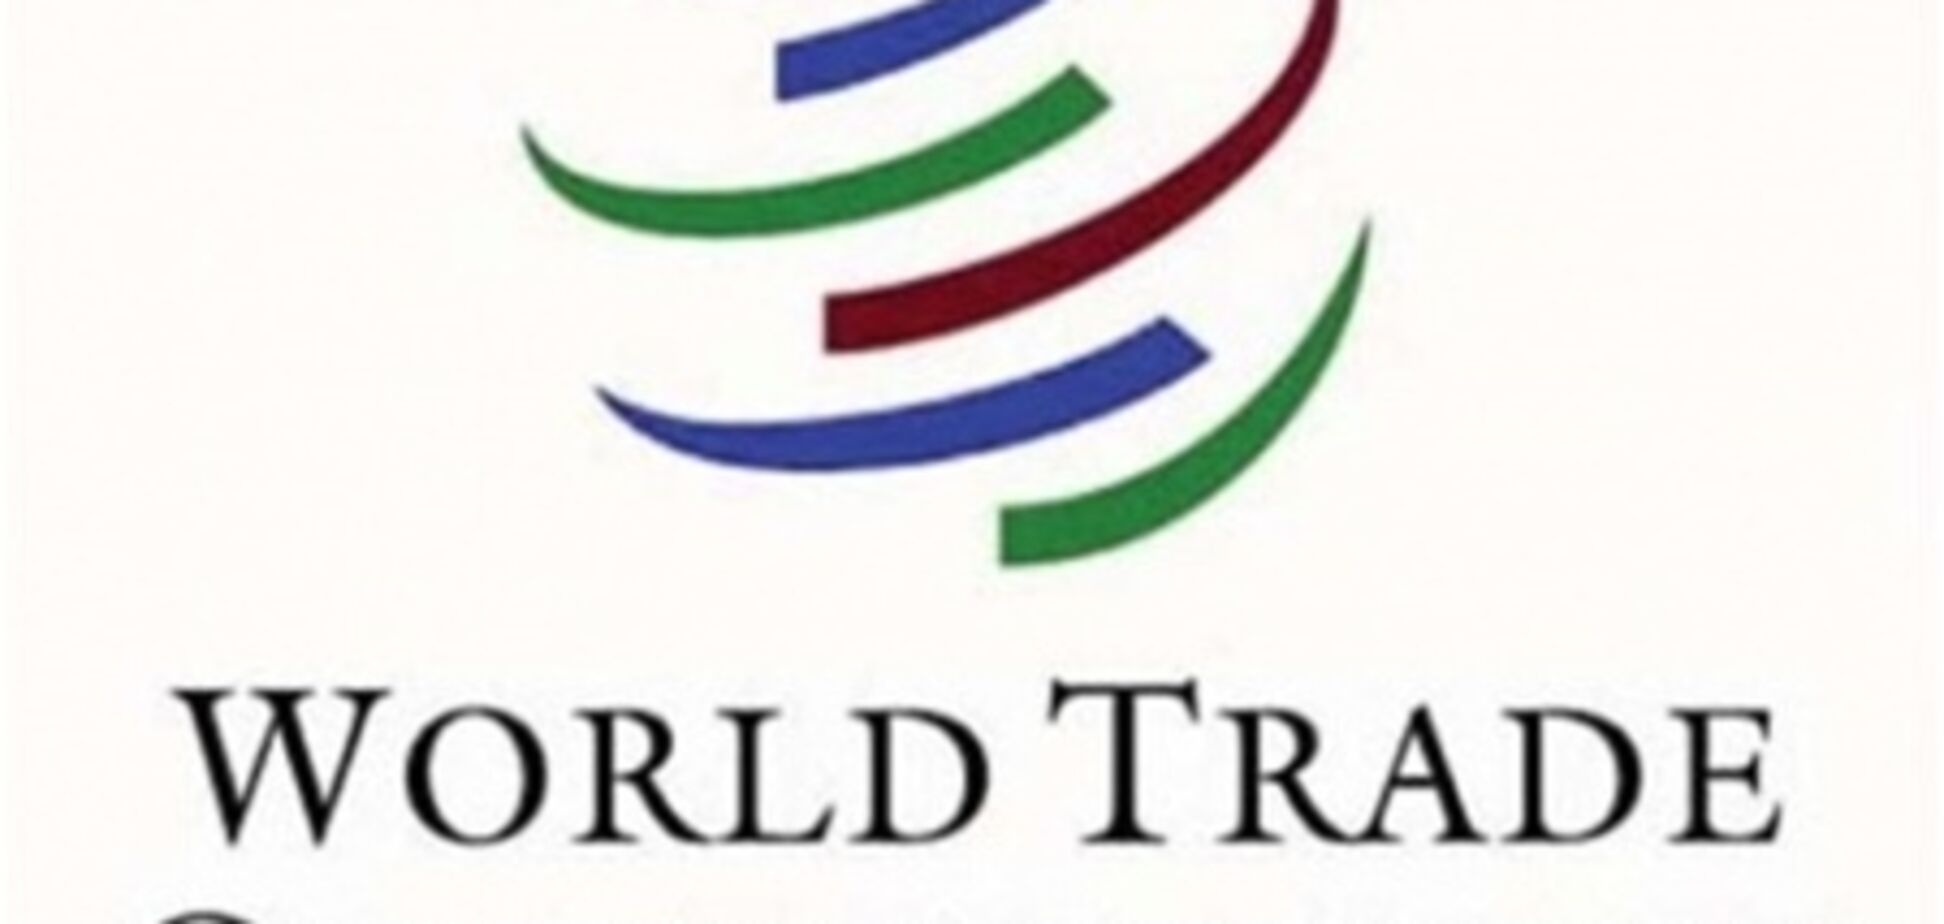 ВТО 11 июля рассмотрит претензии к Украине по пошлинам